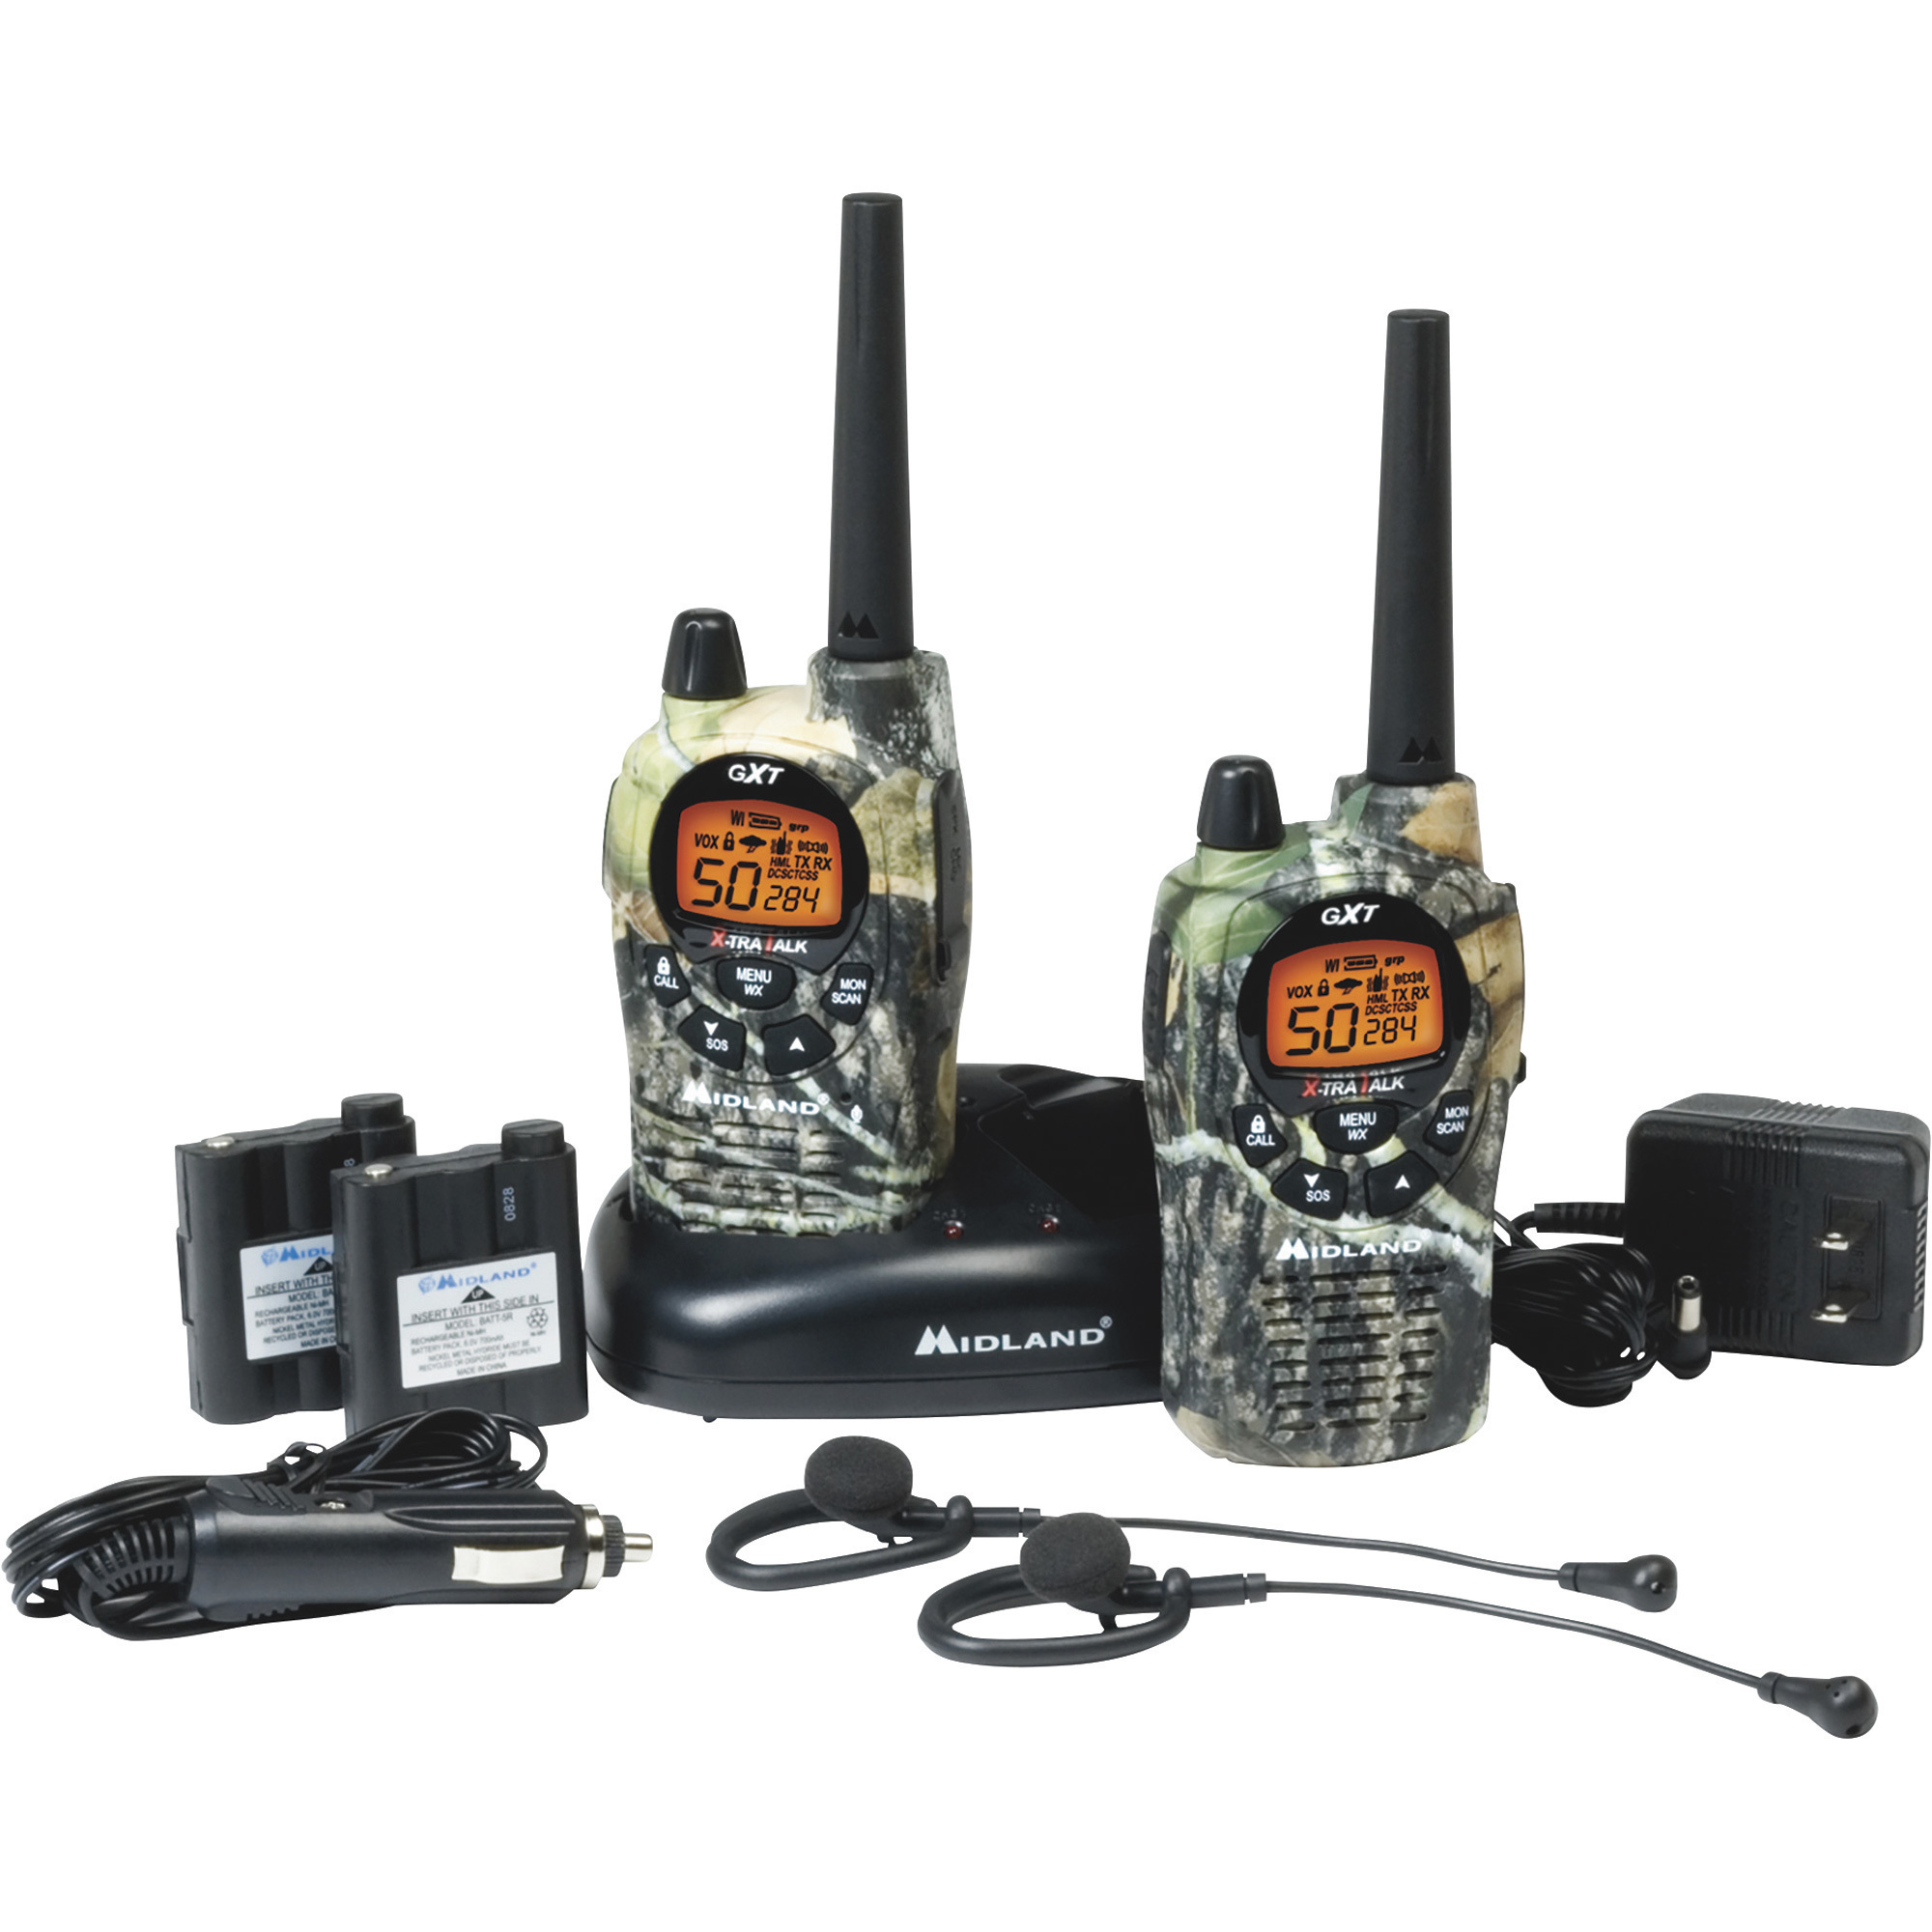 Handheld GMRS Radio — Pair, 36-Mile Range, Model - Midland GXT1050VP4